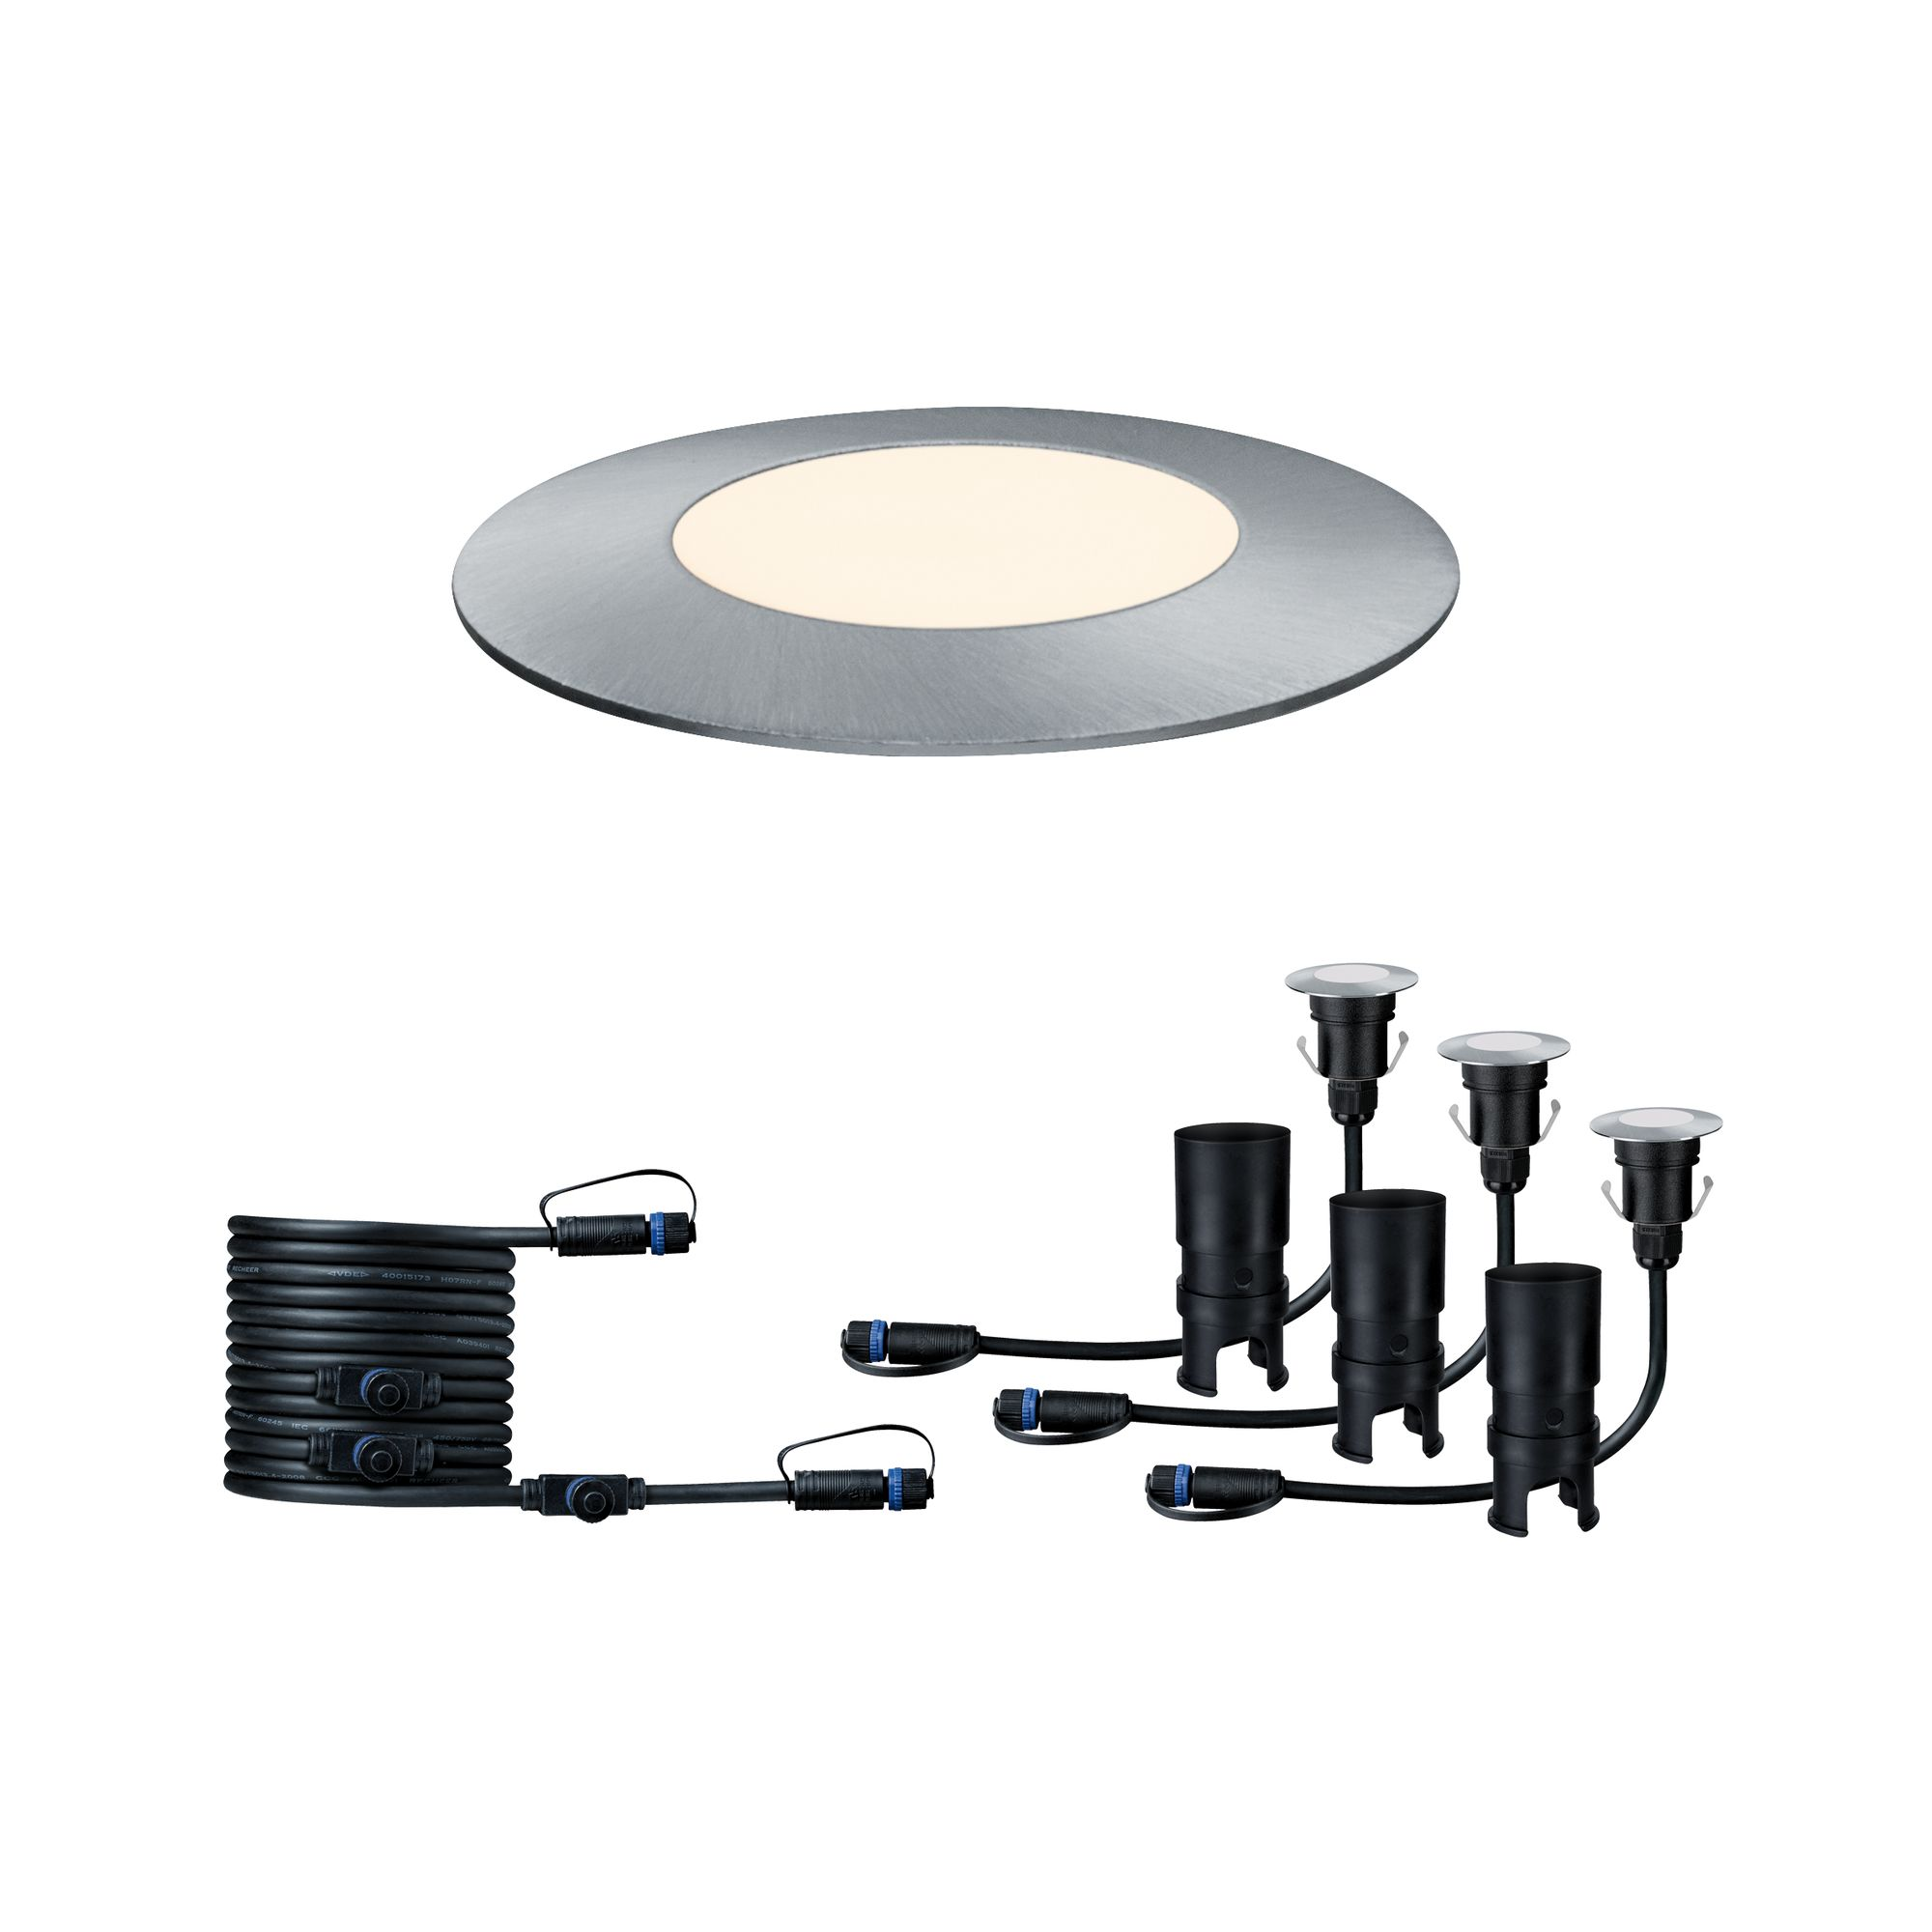 Einbauleuchten-Set 'Plug & Shine' für außen, 3 Einbauleuchten mit Verbindungskabel, 50 lm, silber + product picture